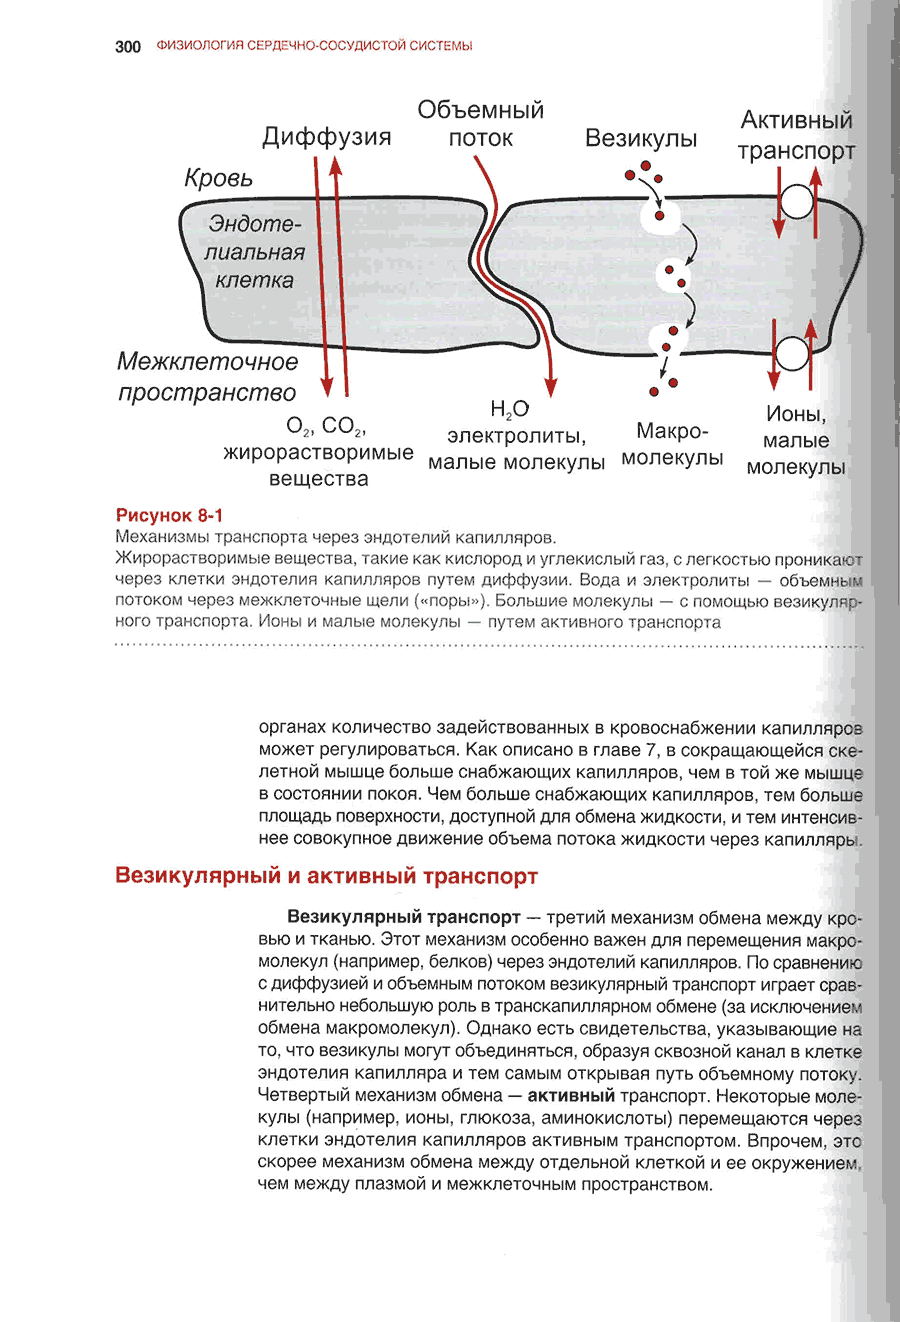 Механизмы транспорта через эндотелий капилляров.